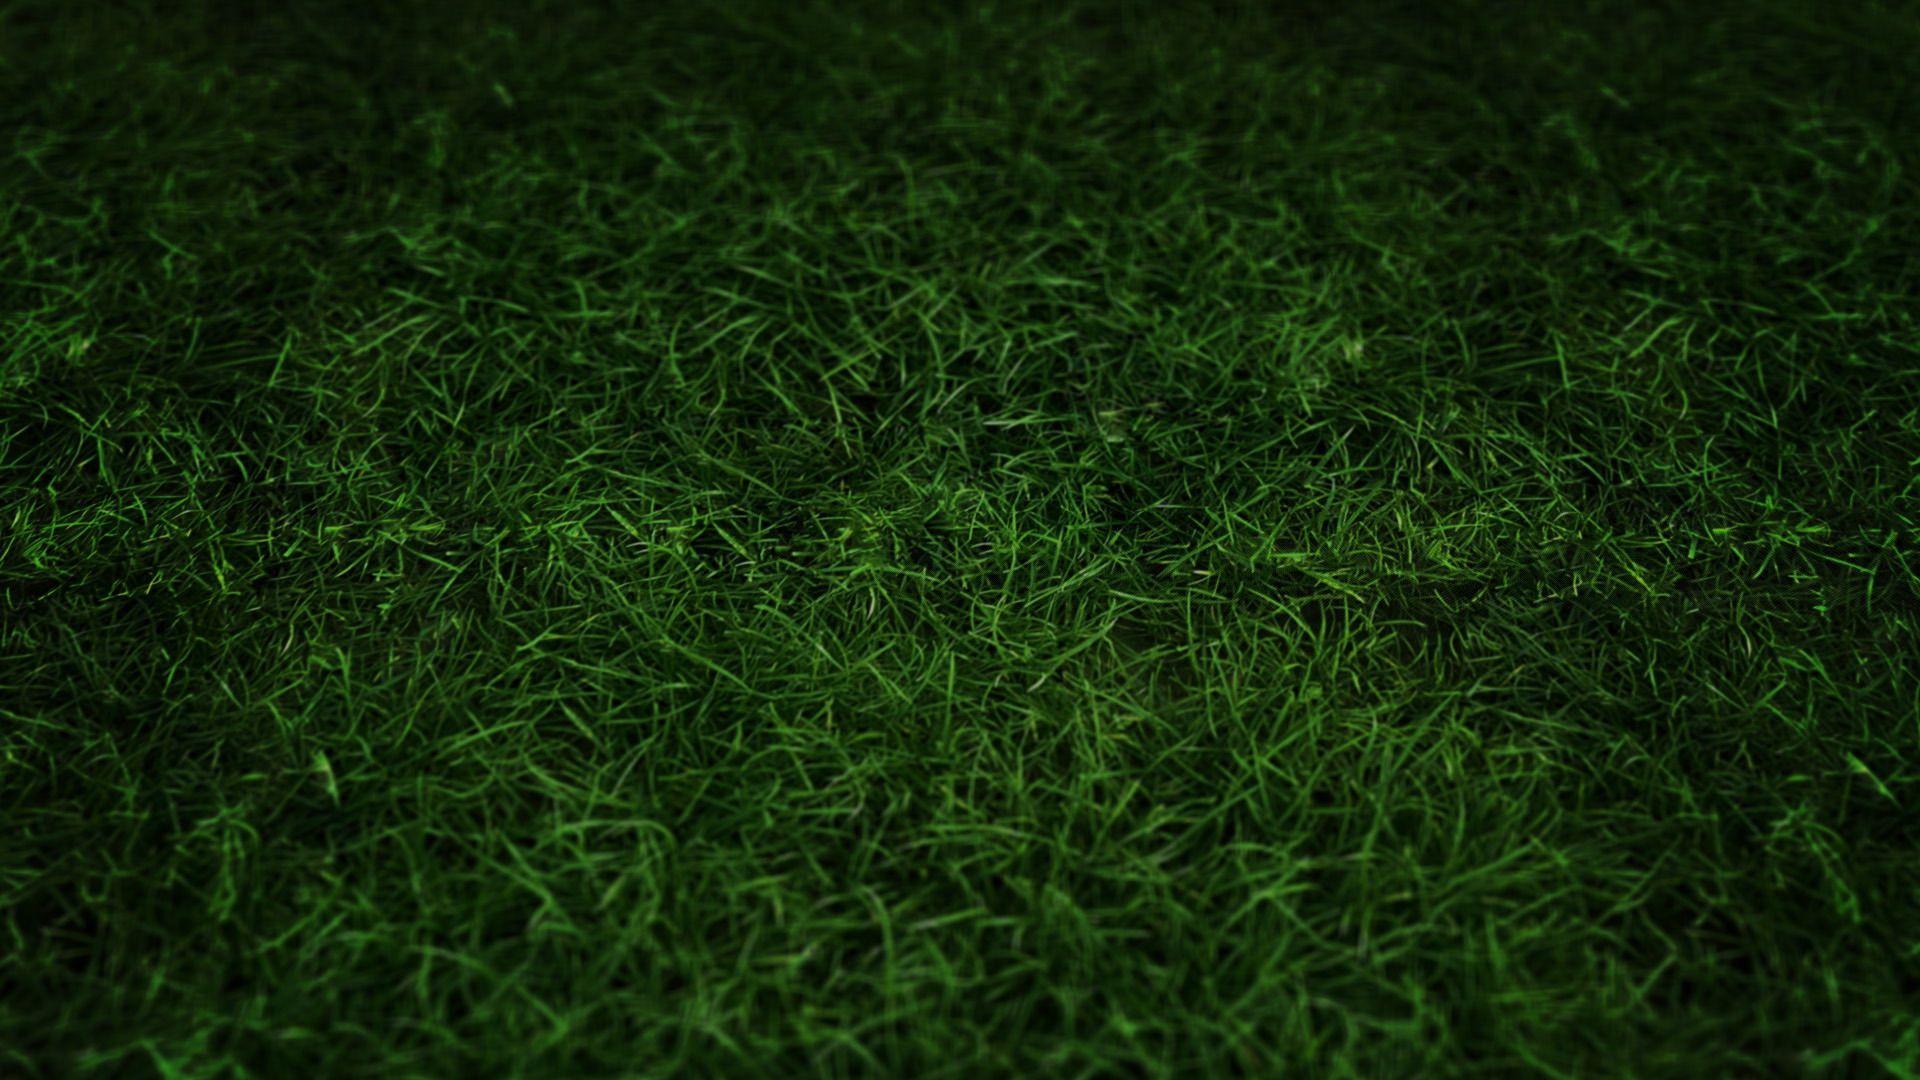 Green Grass Wallpapers - Top Free Green Grass Backgrounds - WallpaperAccess